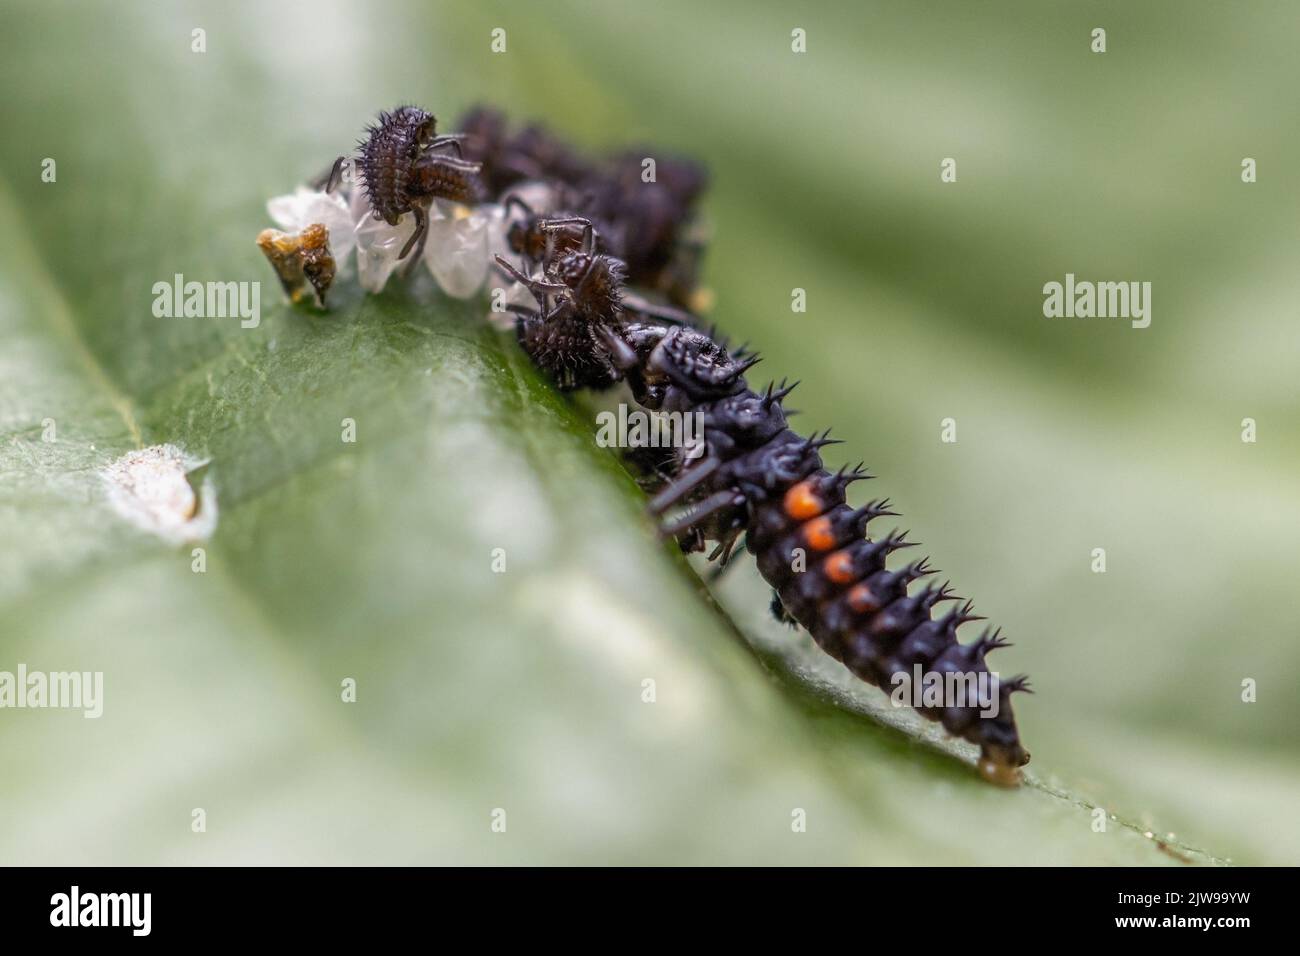 Larve de l'arlequin coccinelle (Harmonia axyridis) mangeant une autre larve de la même espèce ayant juste éclos - comportement cannibalitique, Royaume-Uni Banque D'Images